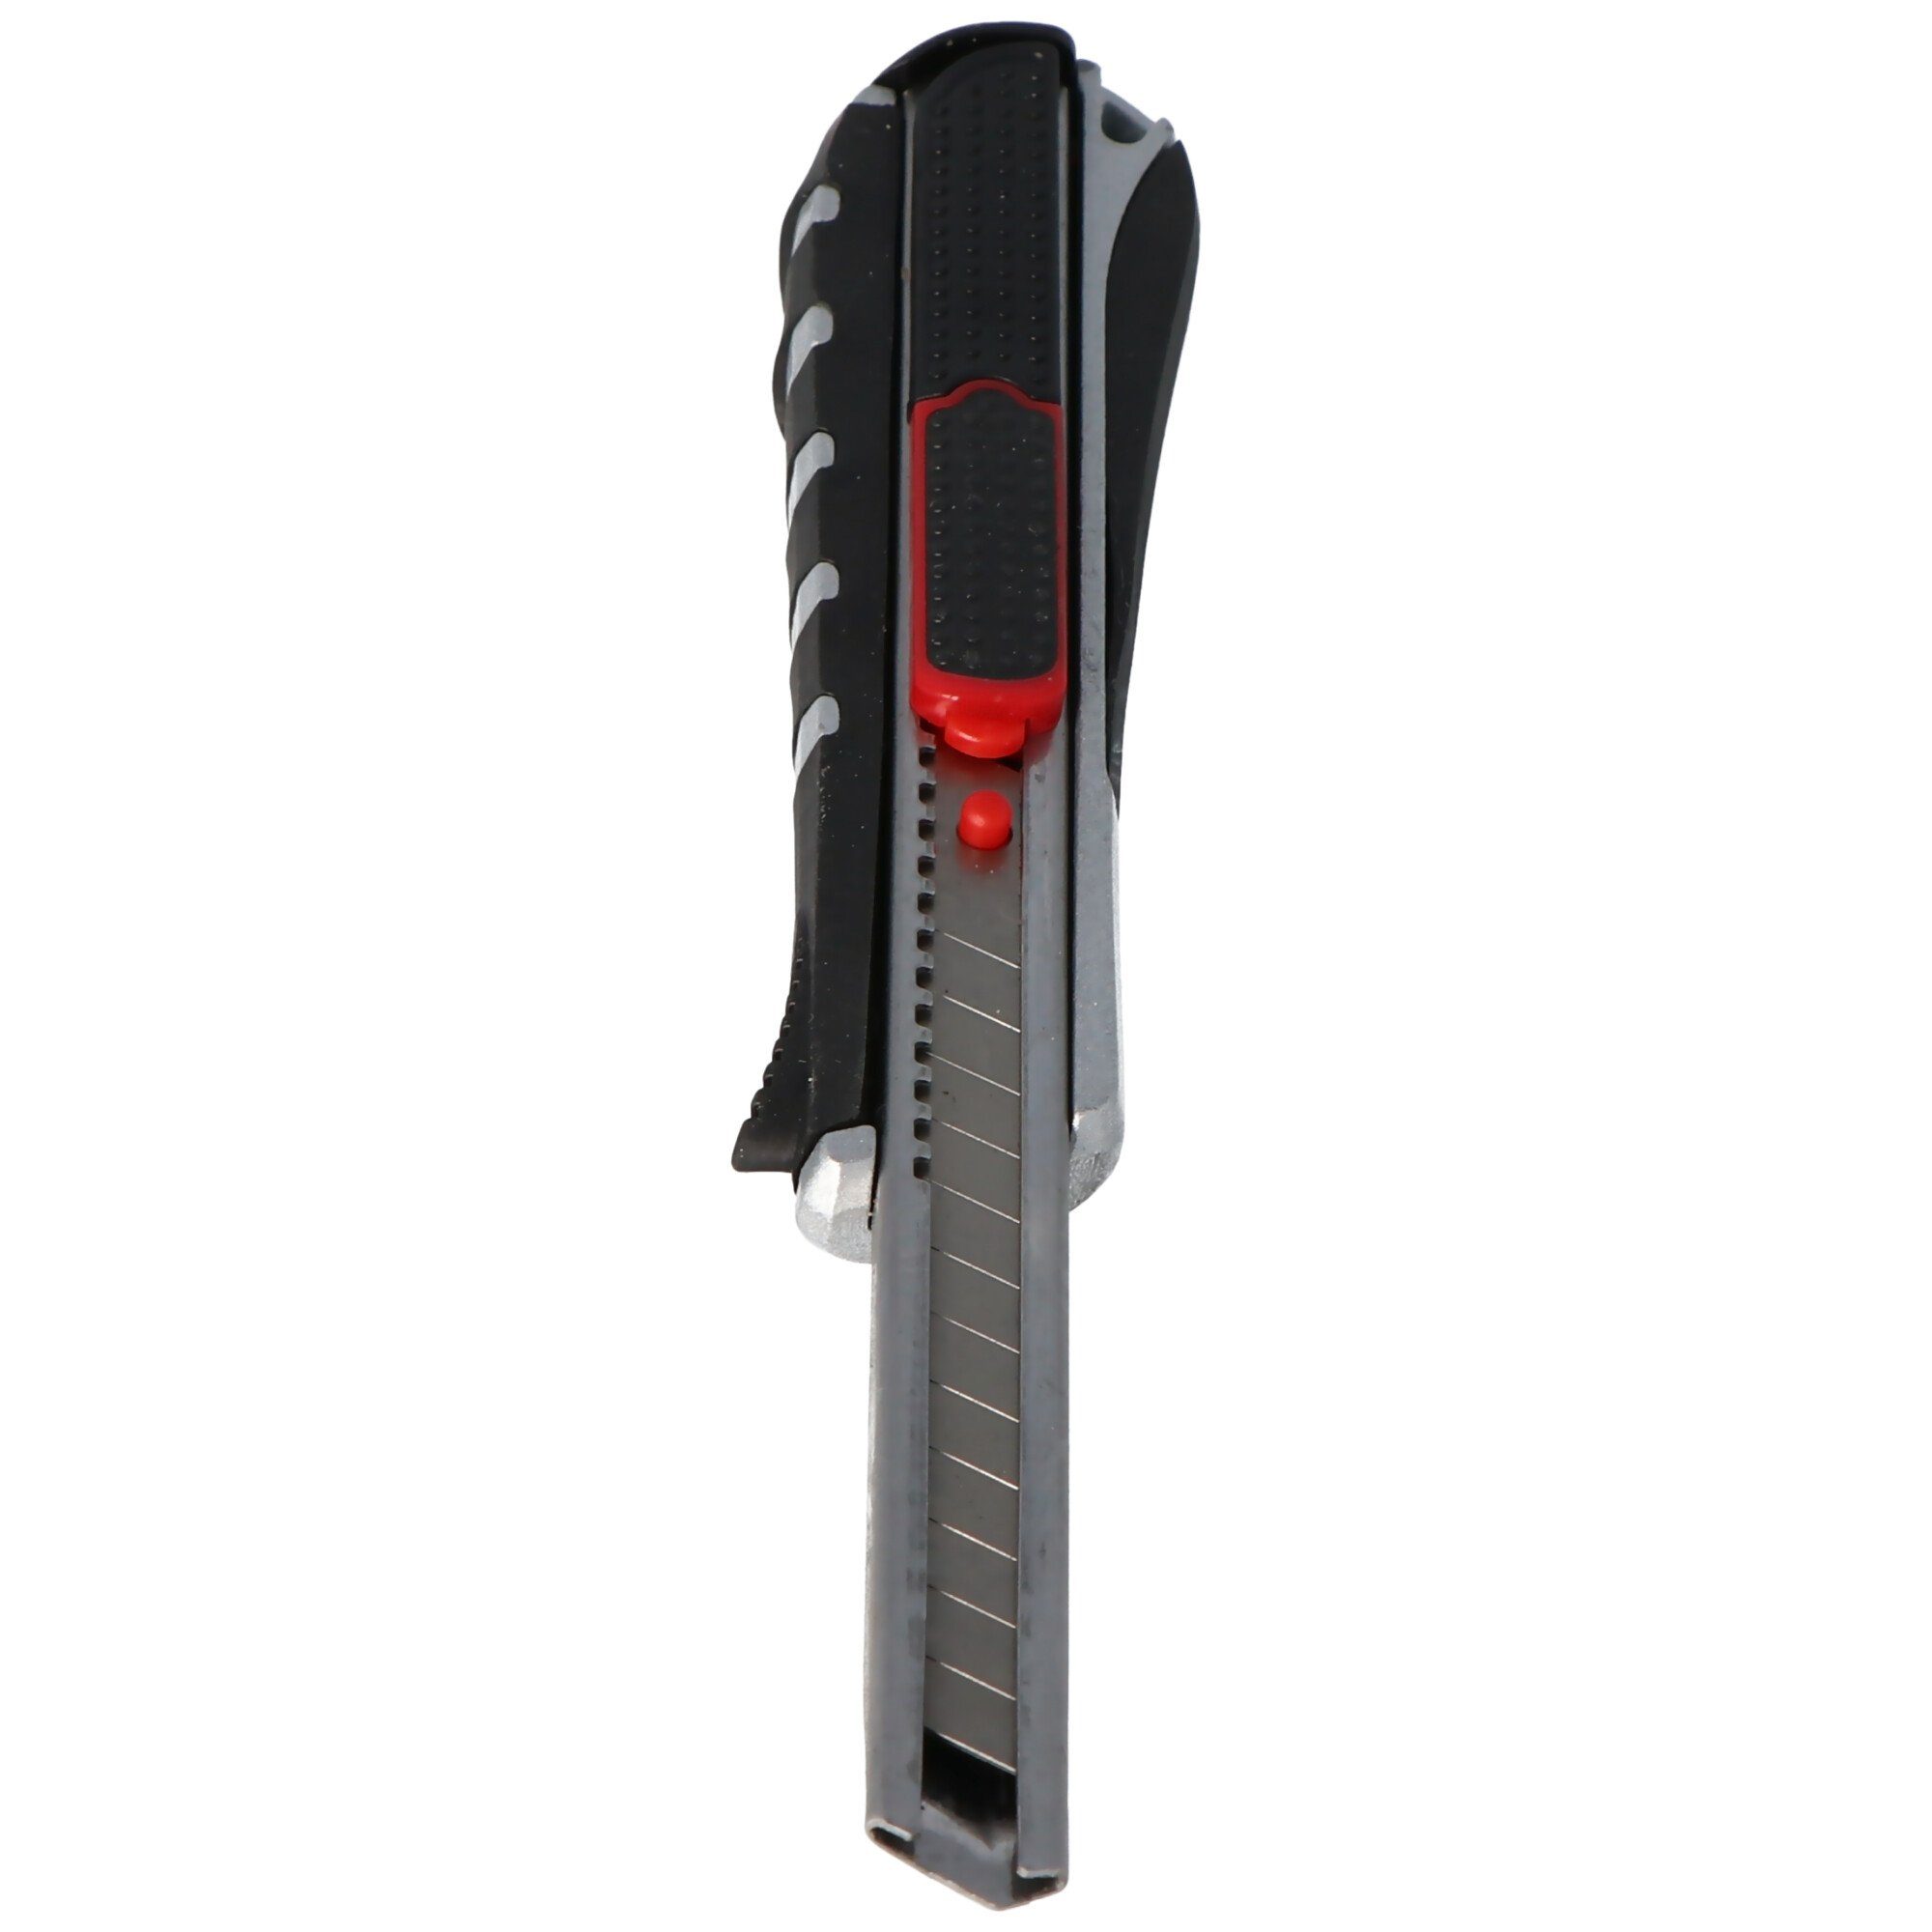 WEDO Cuttermesser Cutter 1-in-1 mit Klingenrückzug Rasterautomatik au automatischem und